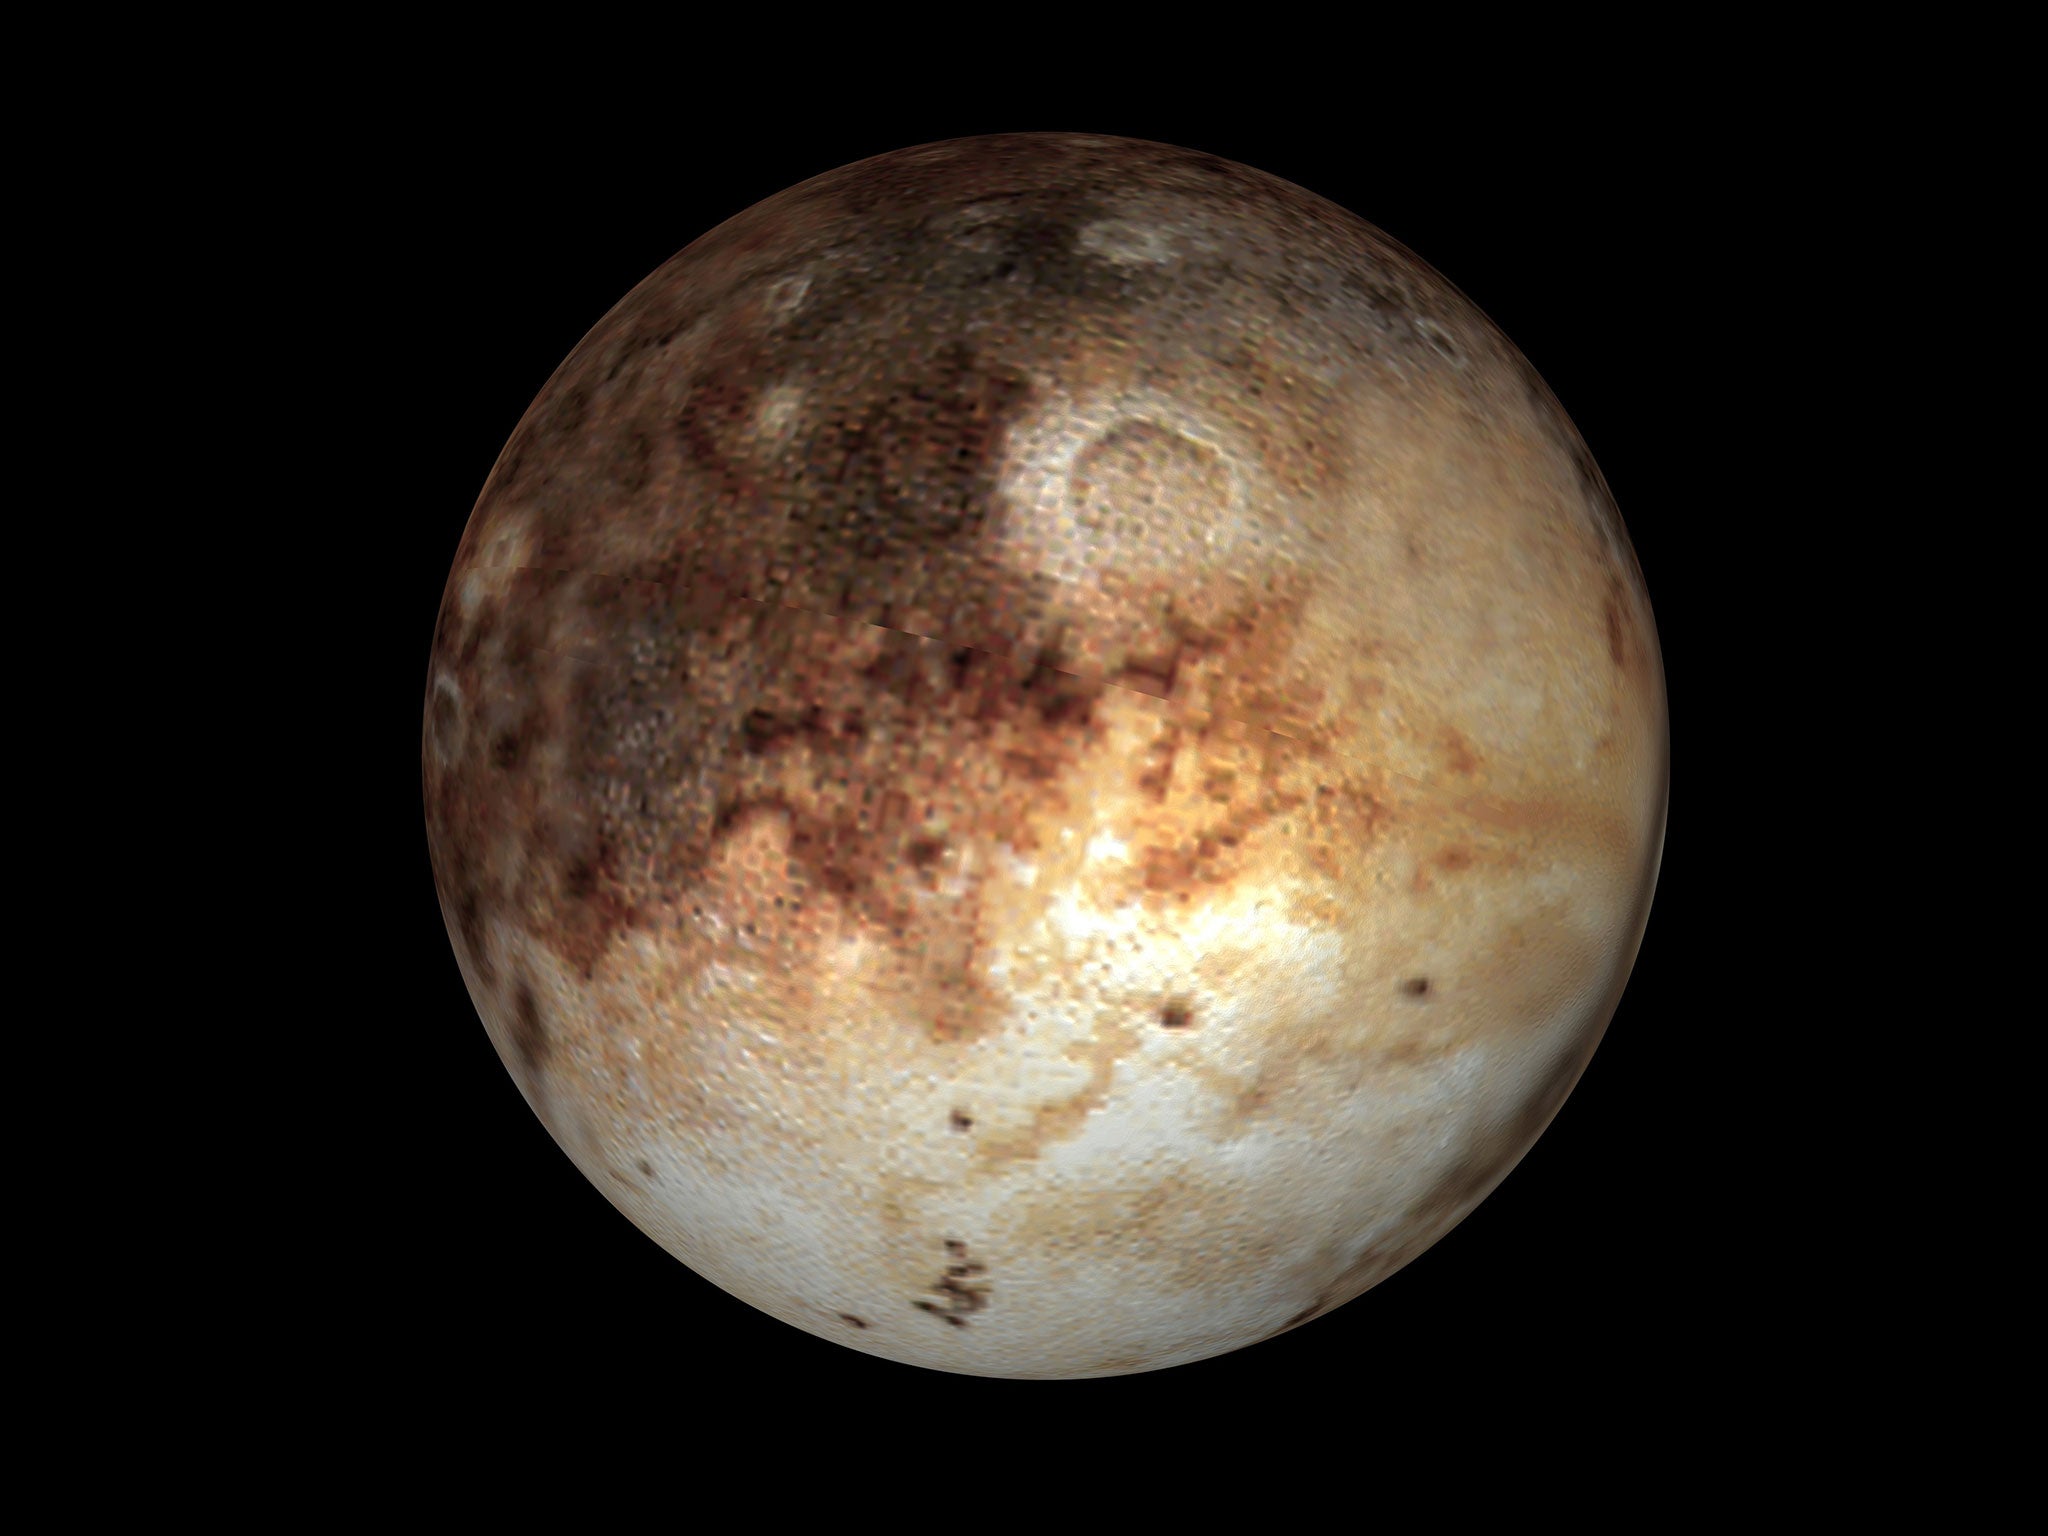 In 2006, Pluto was reclassified as a 'dwarf planet'